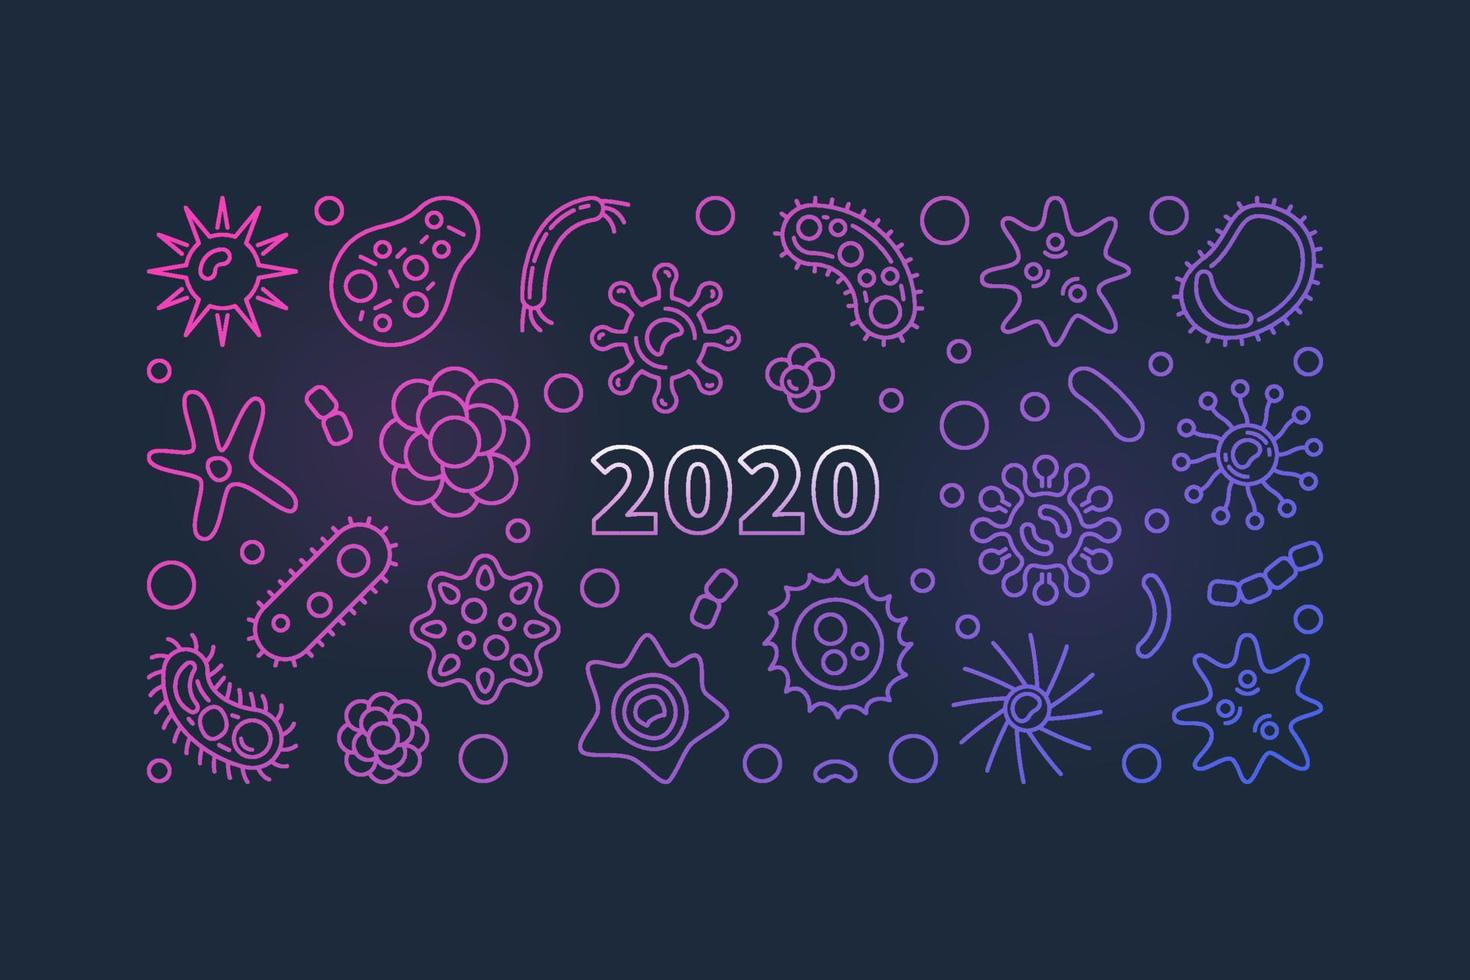 2020 - bandeira horizontal linear colorida do conceito de vetor pandêmico